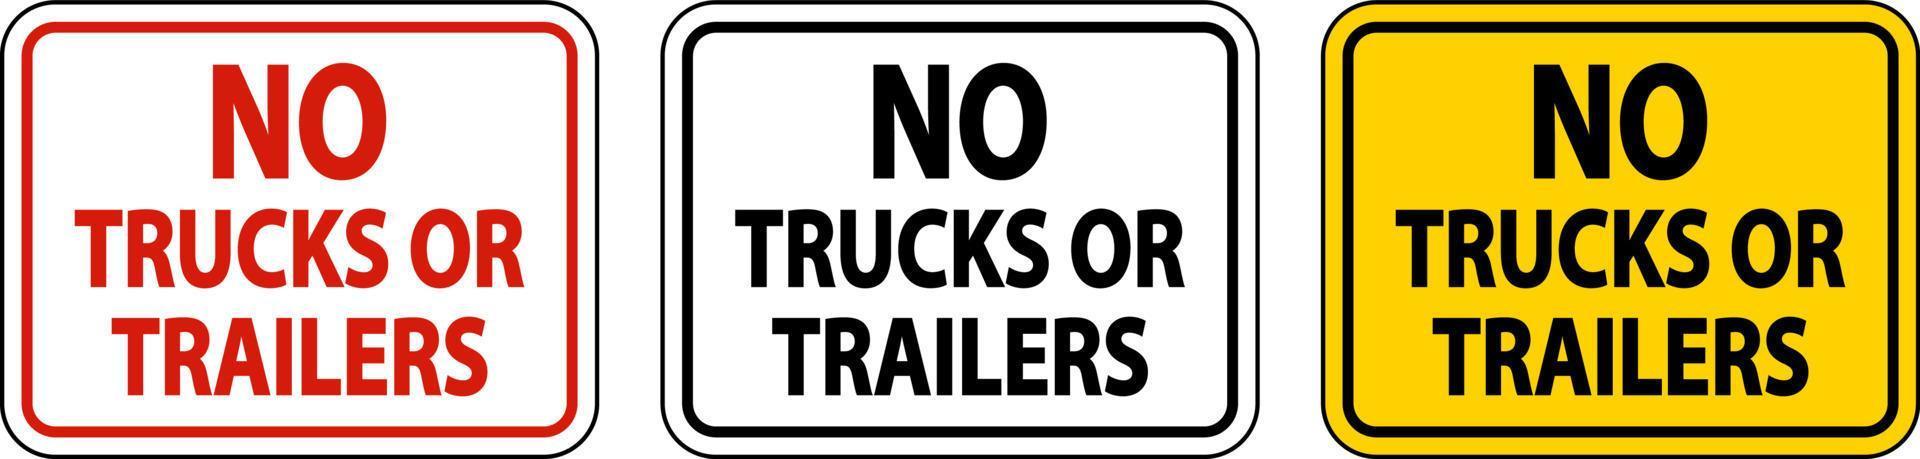 inga lastbilar eller släpvagnar tecken på vit bakgrund vektor